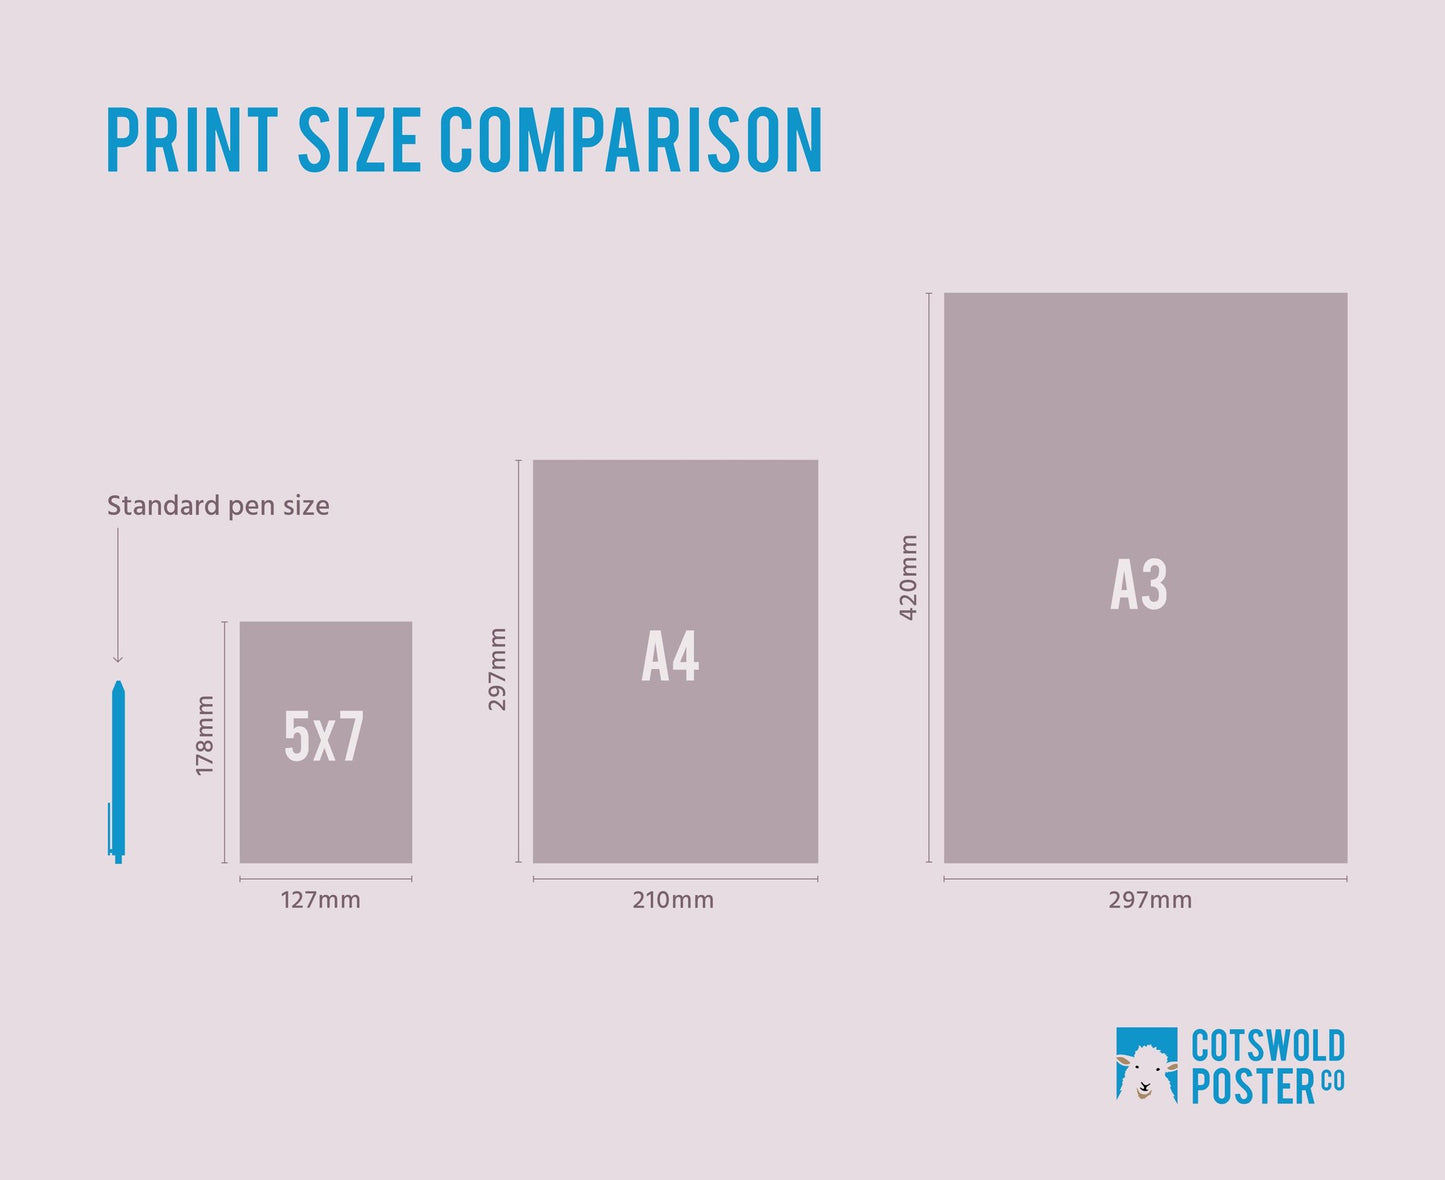 Print scale comparison